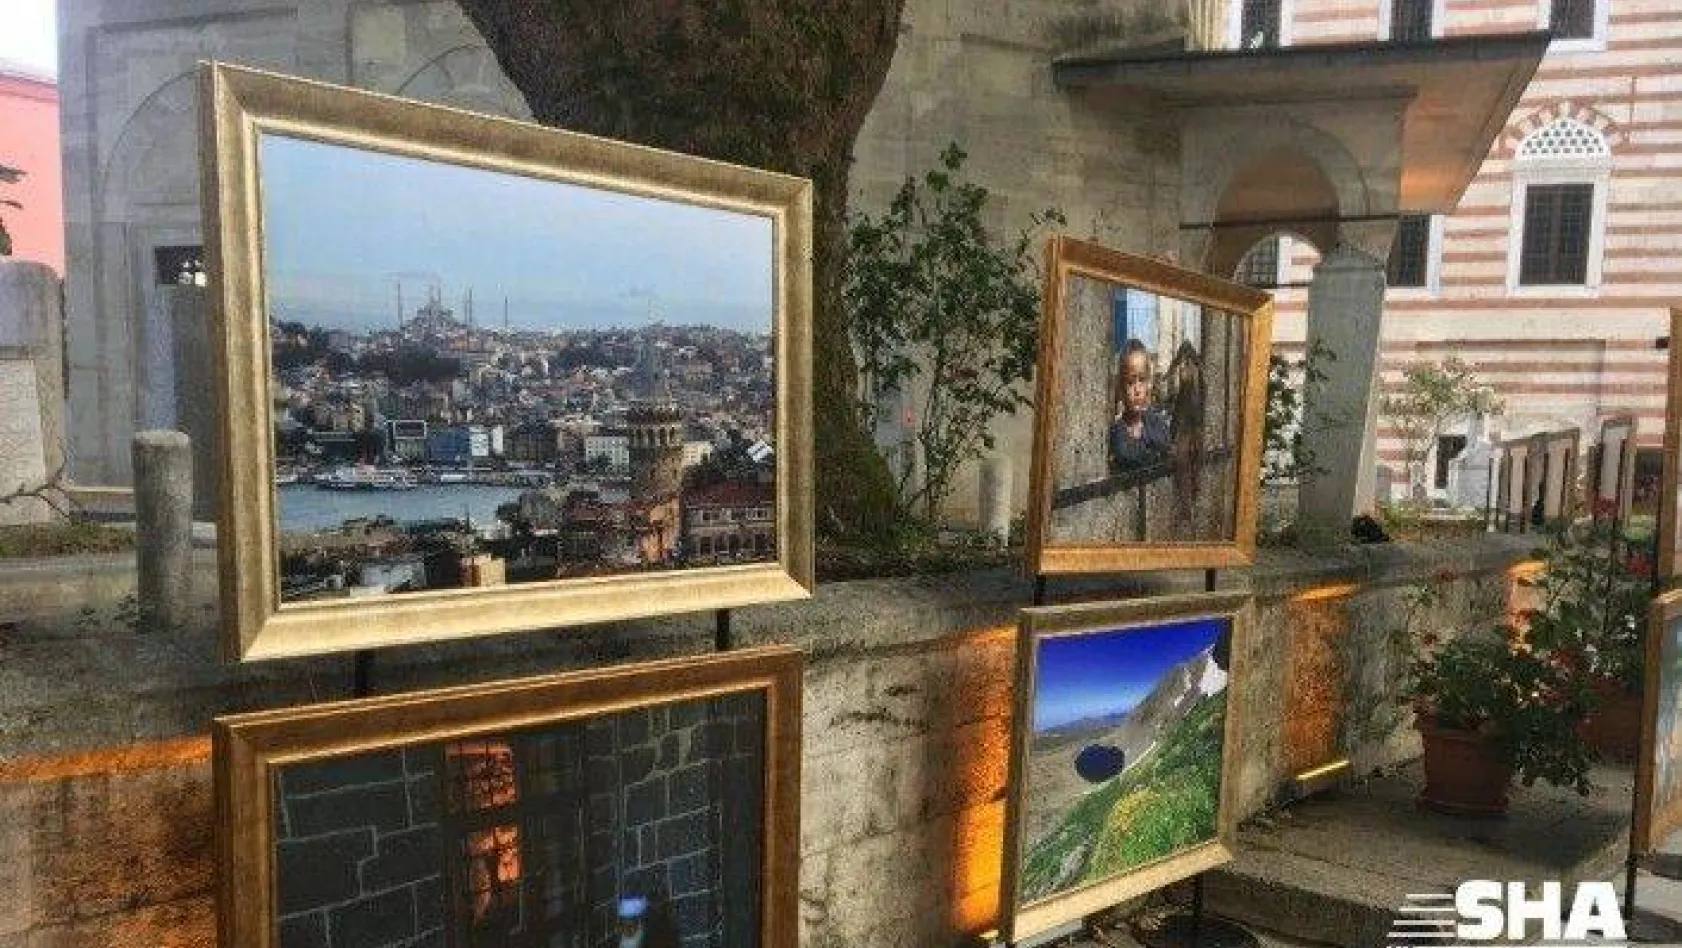 Anadolu'nun kültürel zenginlikleri bu sergide